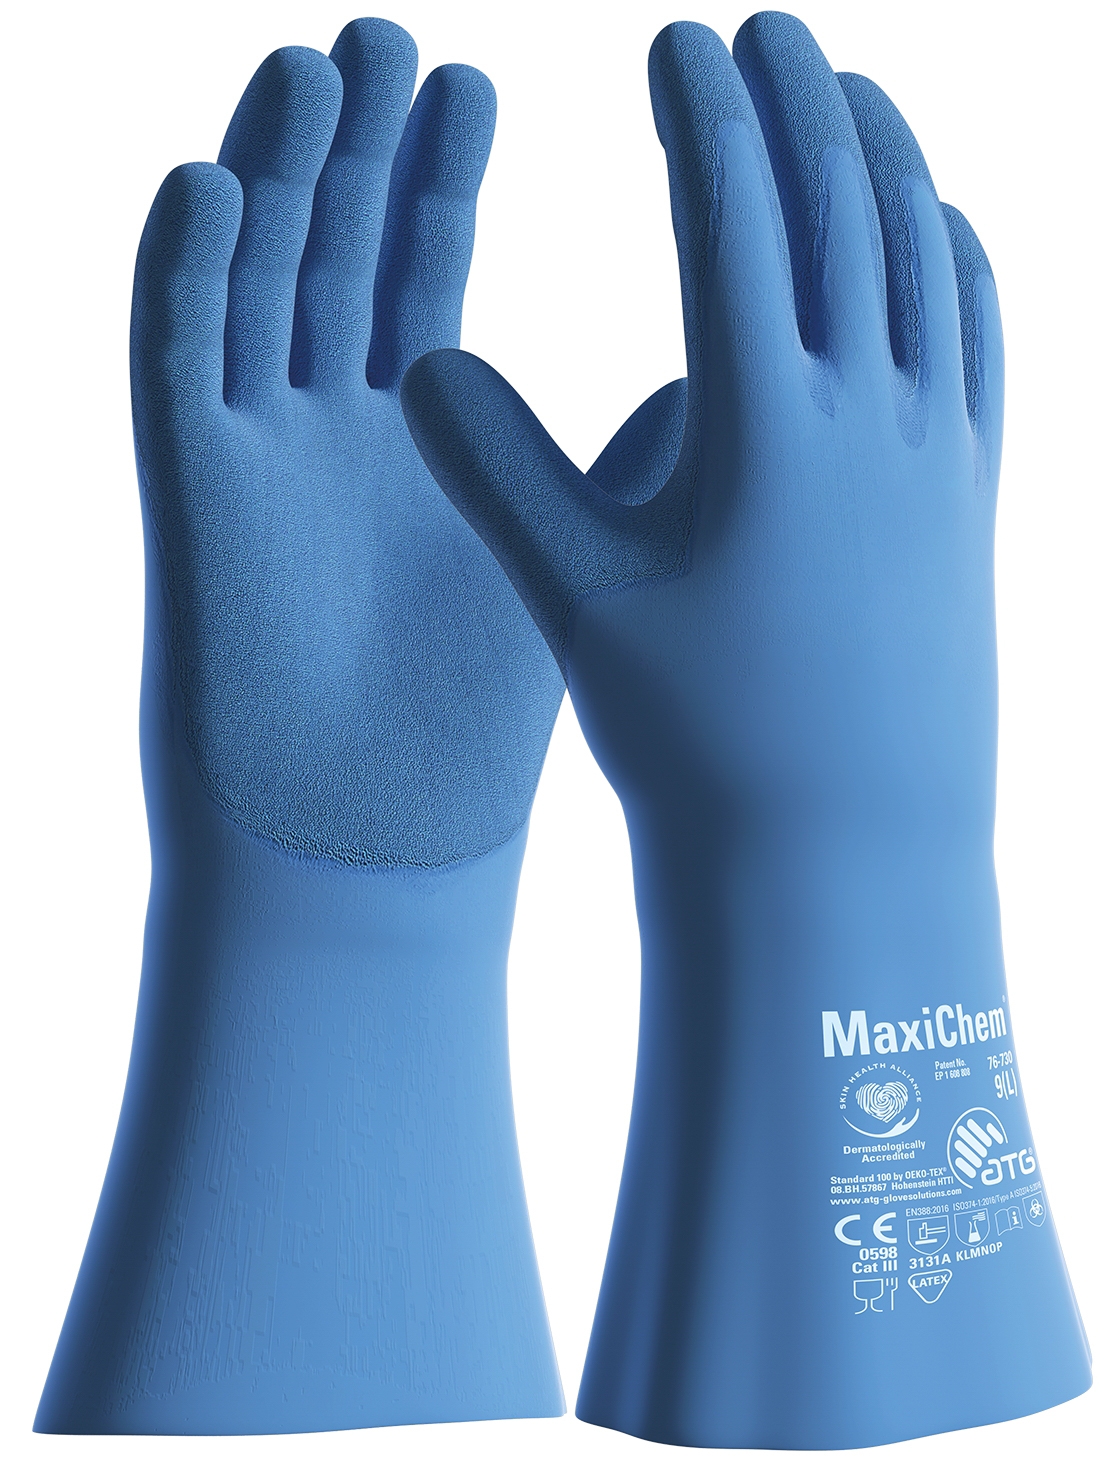 MaxiChem® Chemikalienschutz-Handschuhe (76-730) in Blau, Größe 11